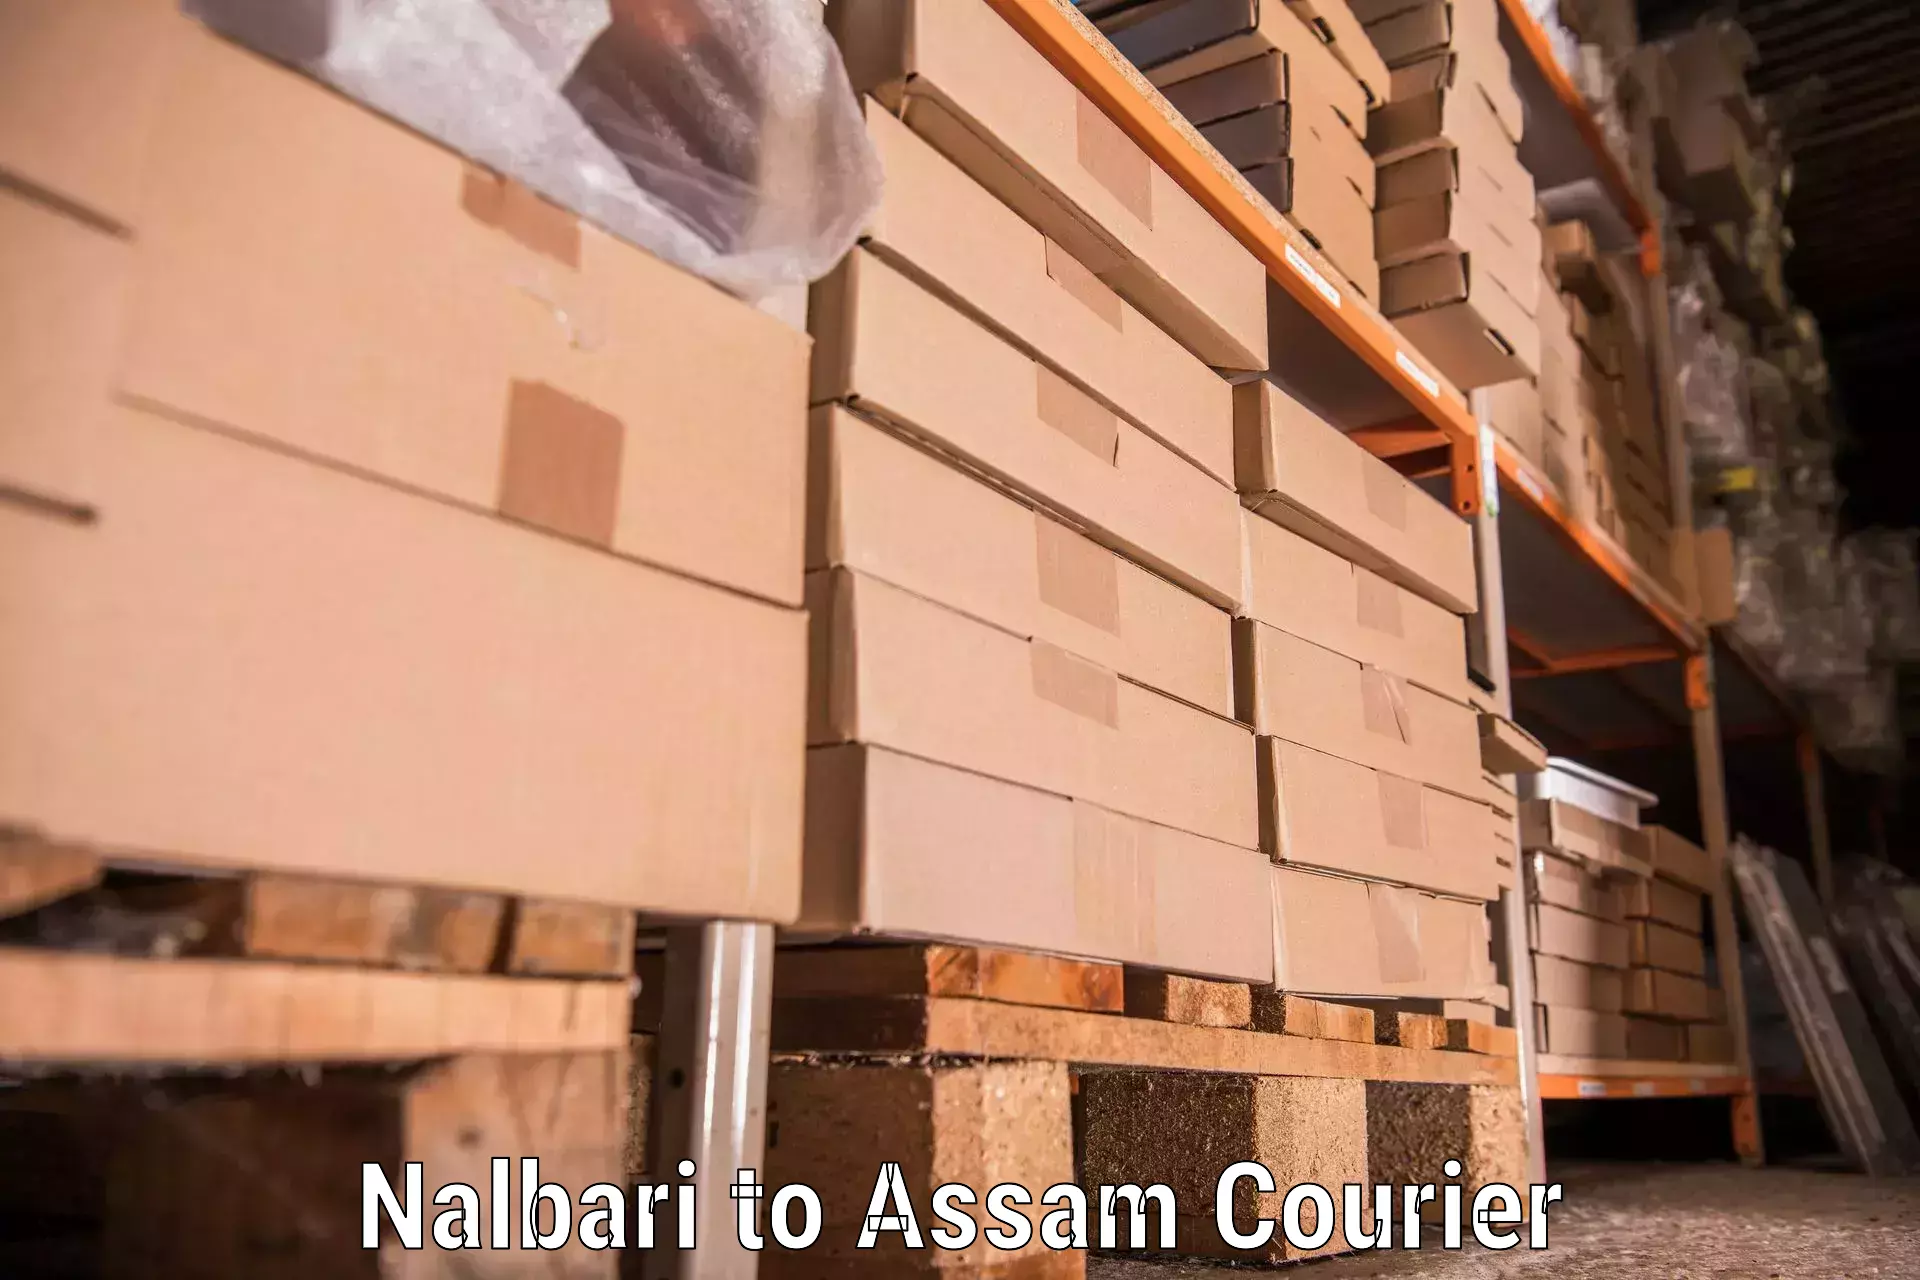 Efficient moving company Nalbari to Goalpara